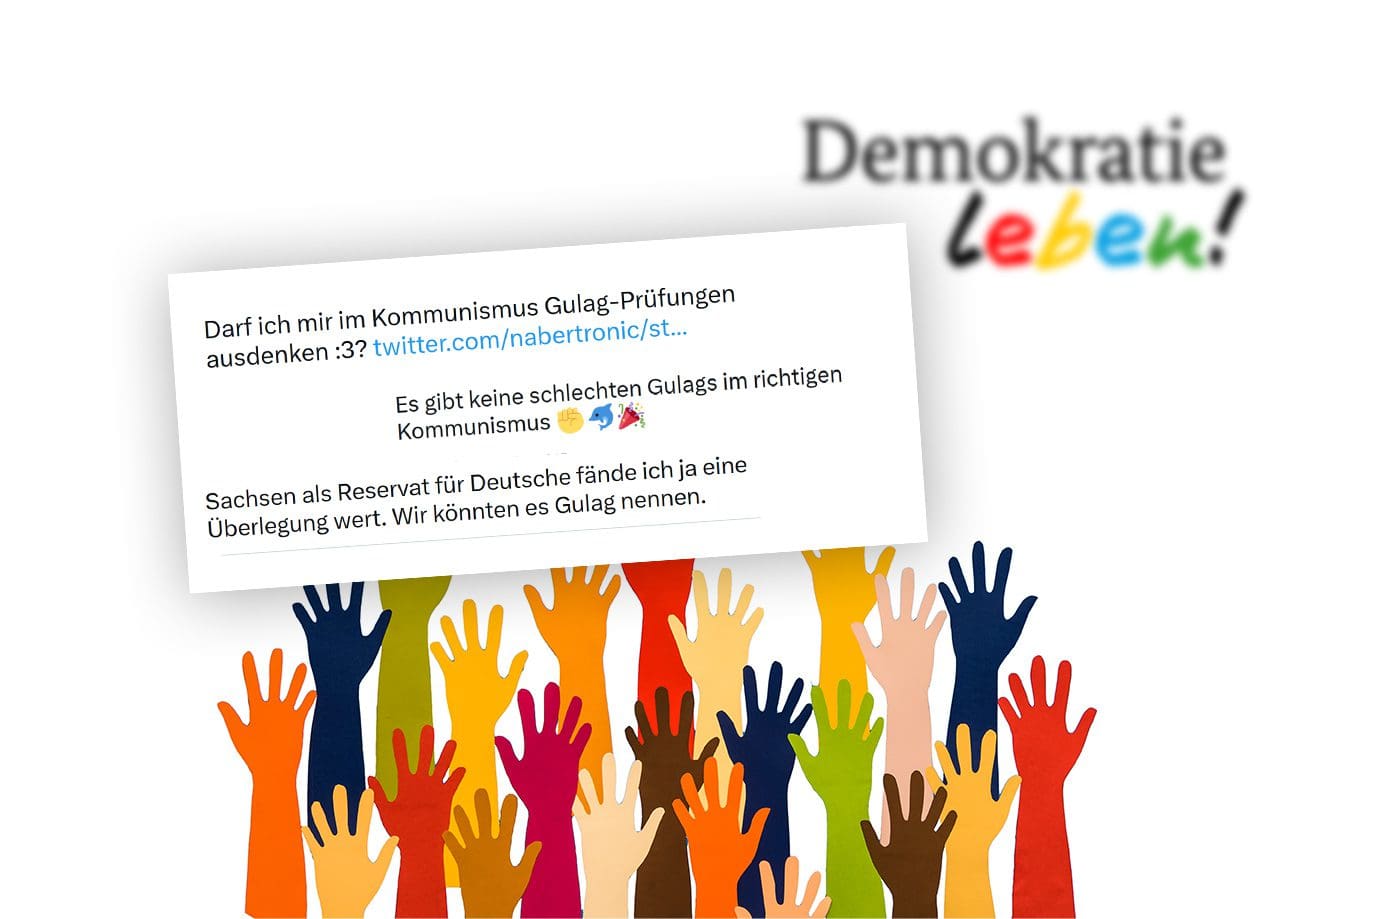 programm-„demokratie-leben!“:-steuergelder-fuer-hass-gegen-deutsche